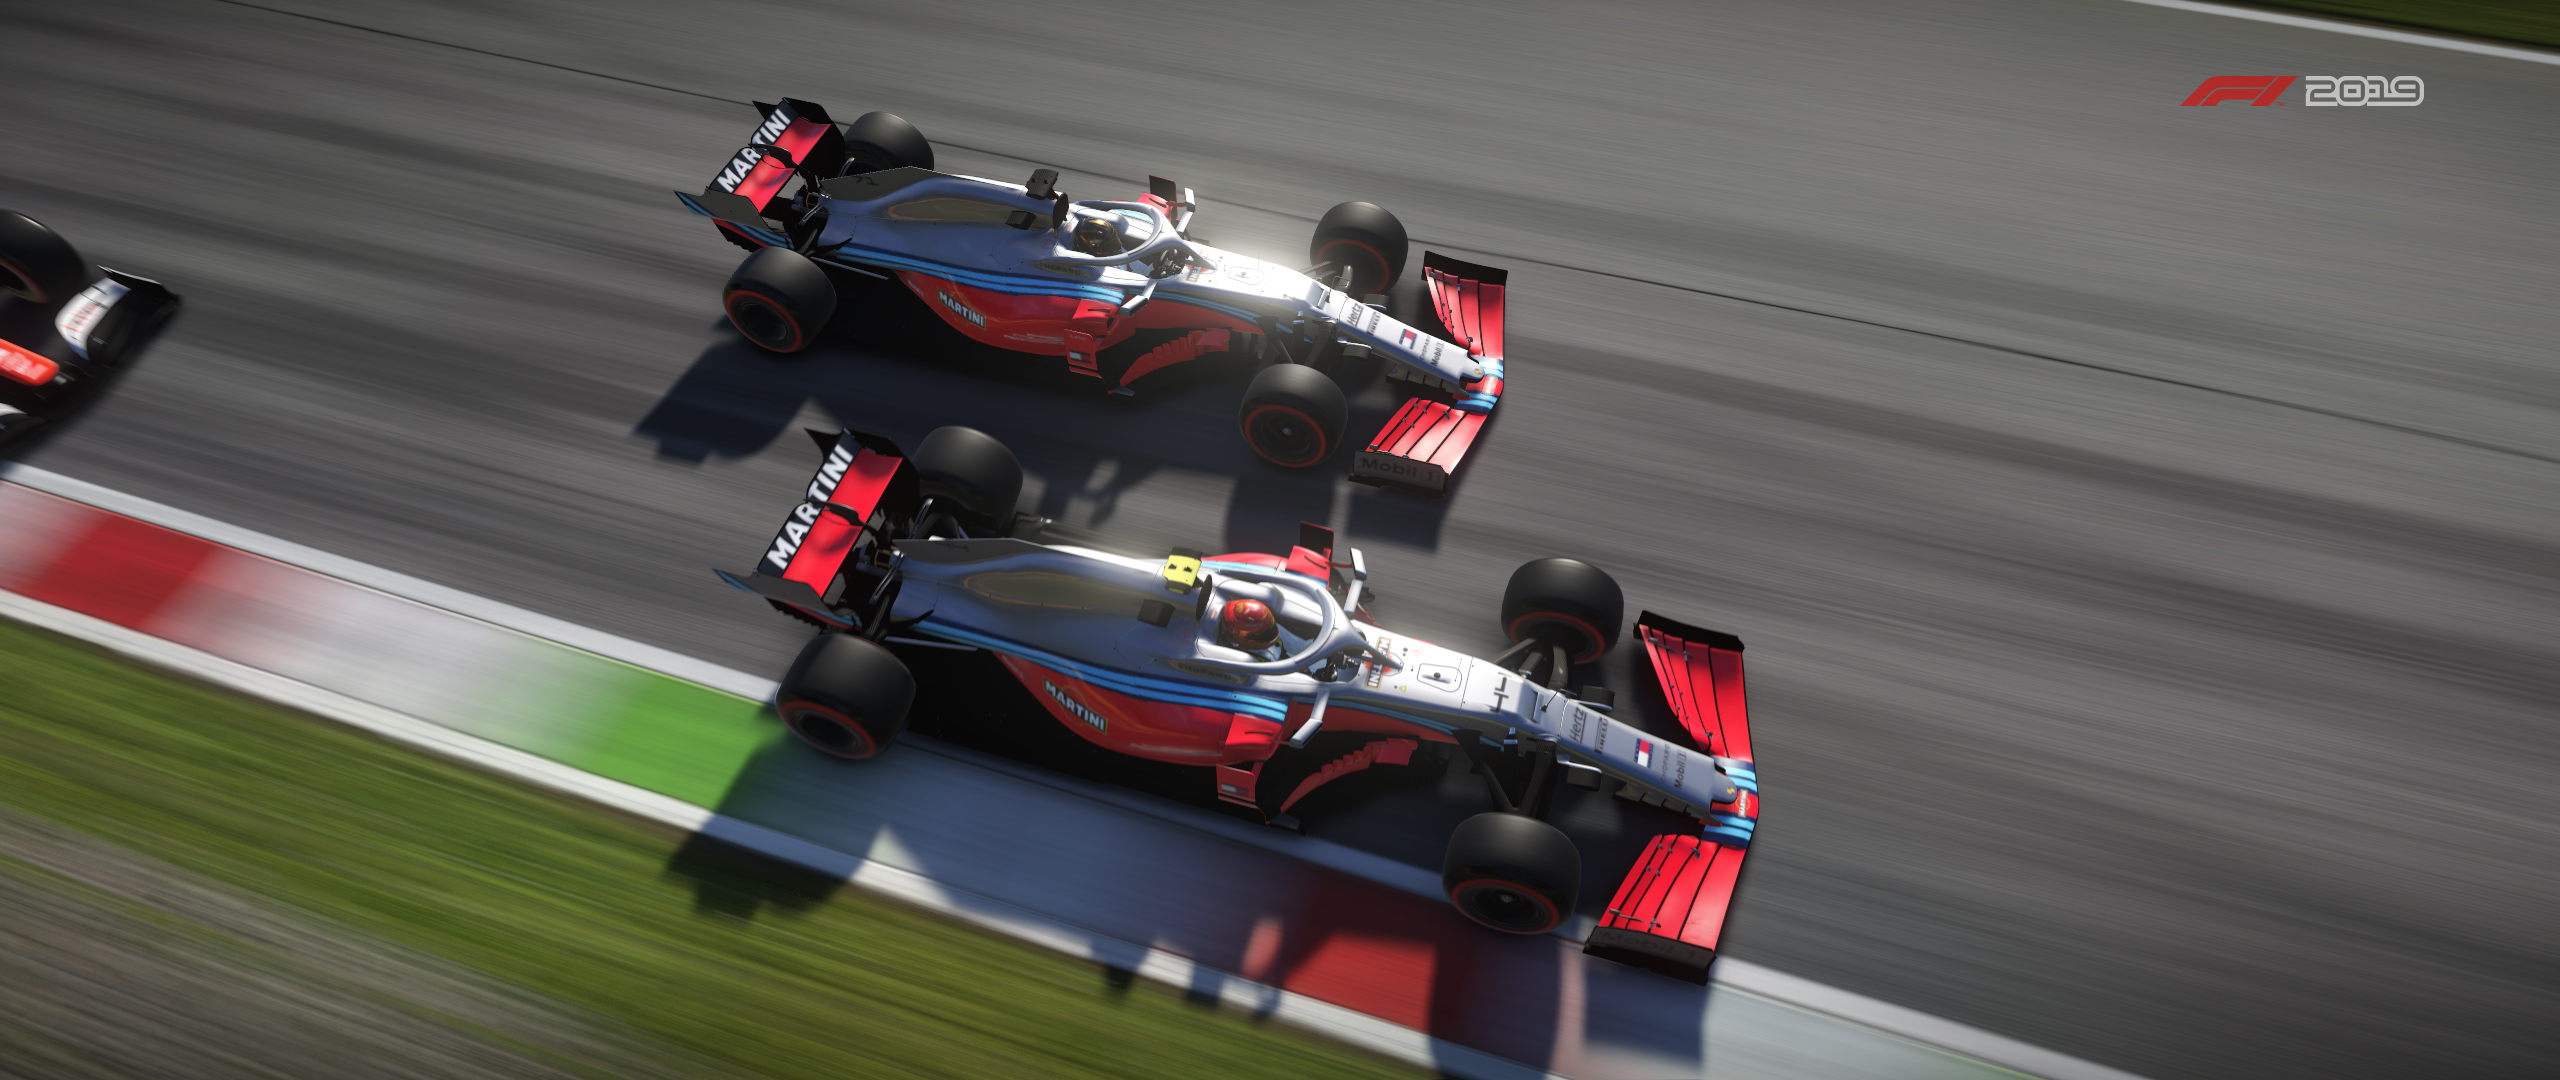 F1 2019 Screenshot 2020.05.17 - 20.19.22.51.jpg